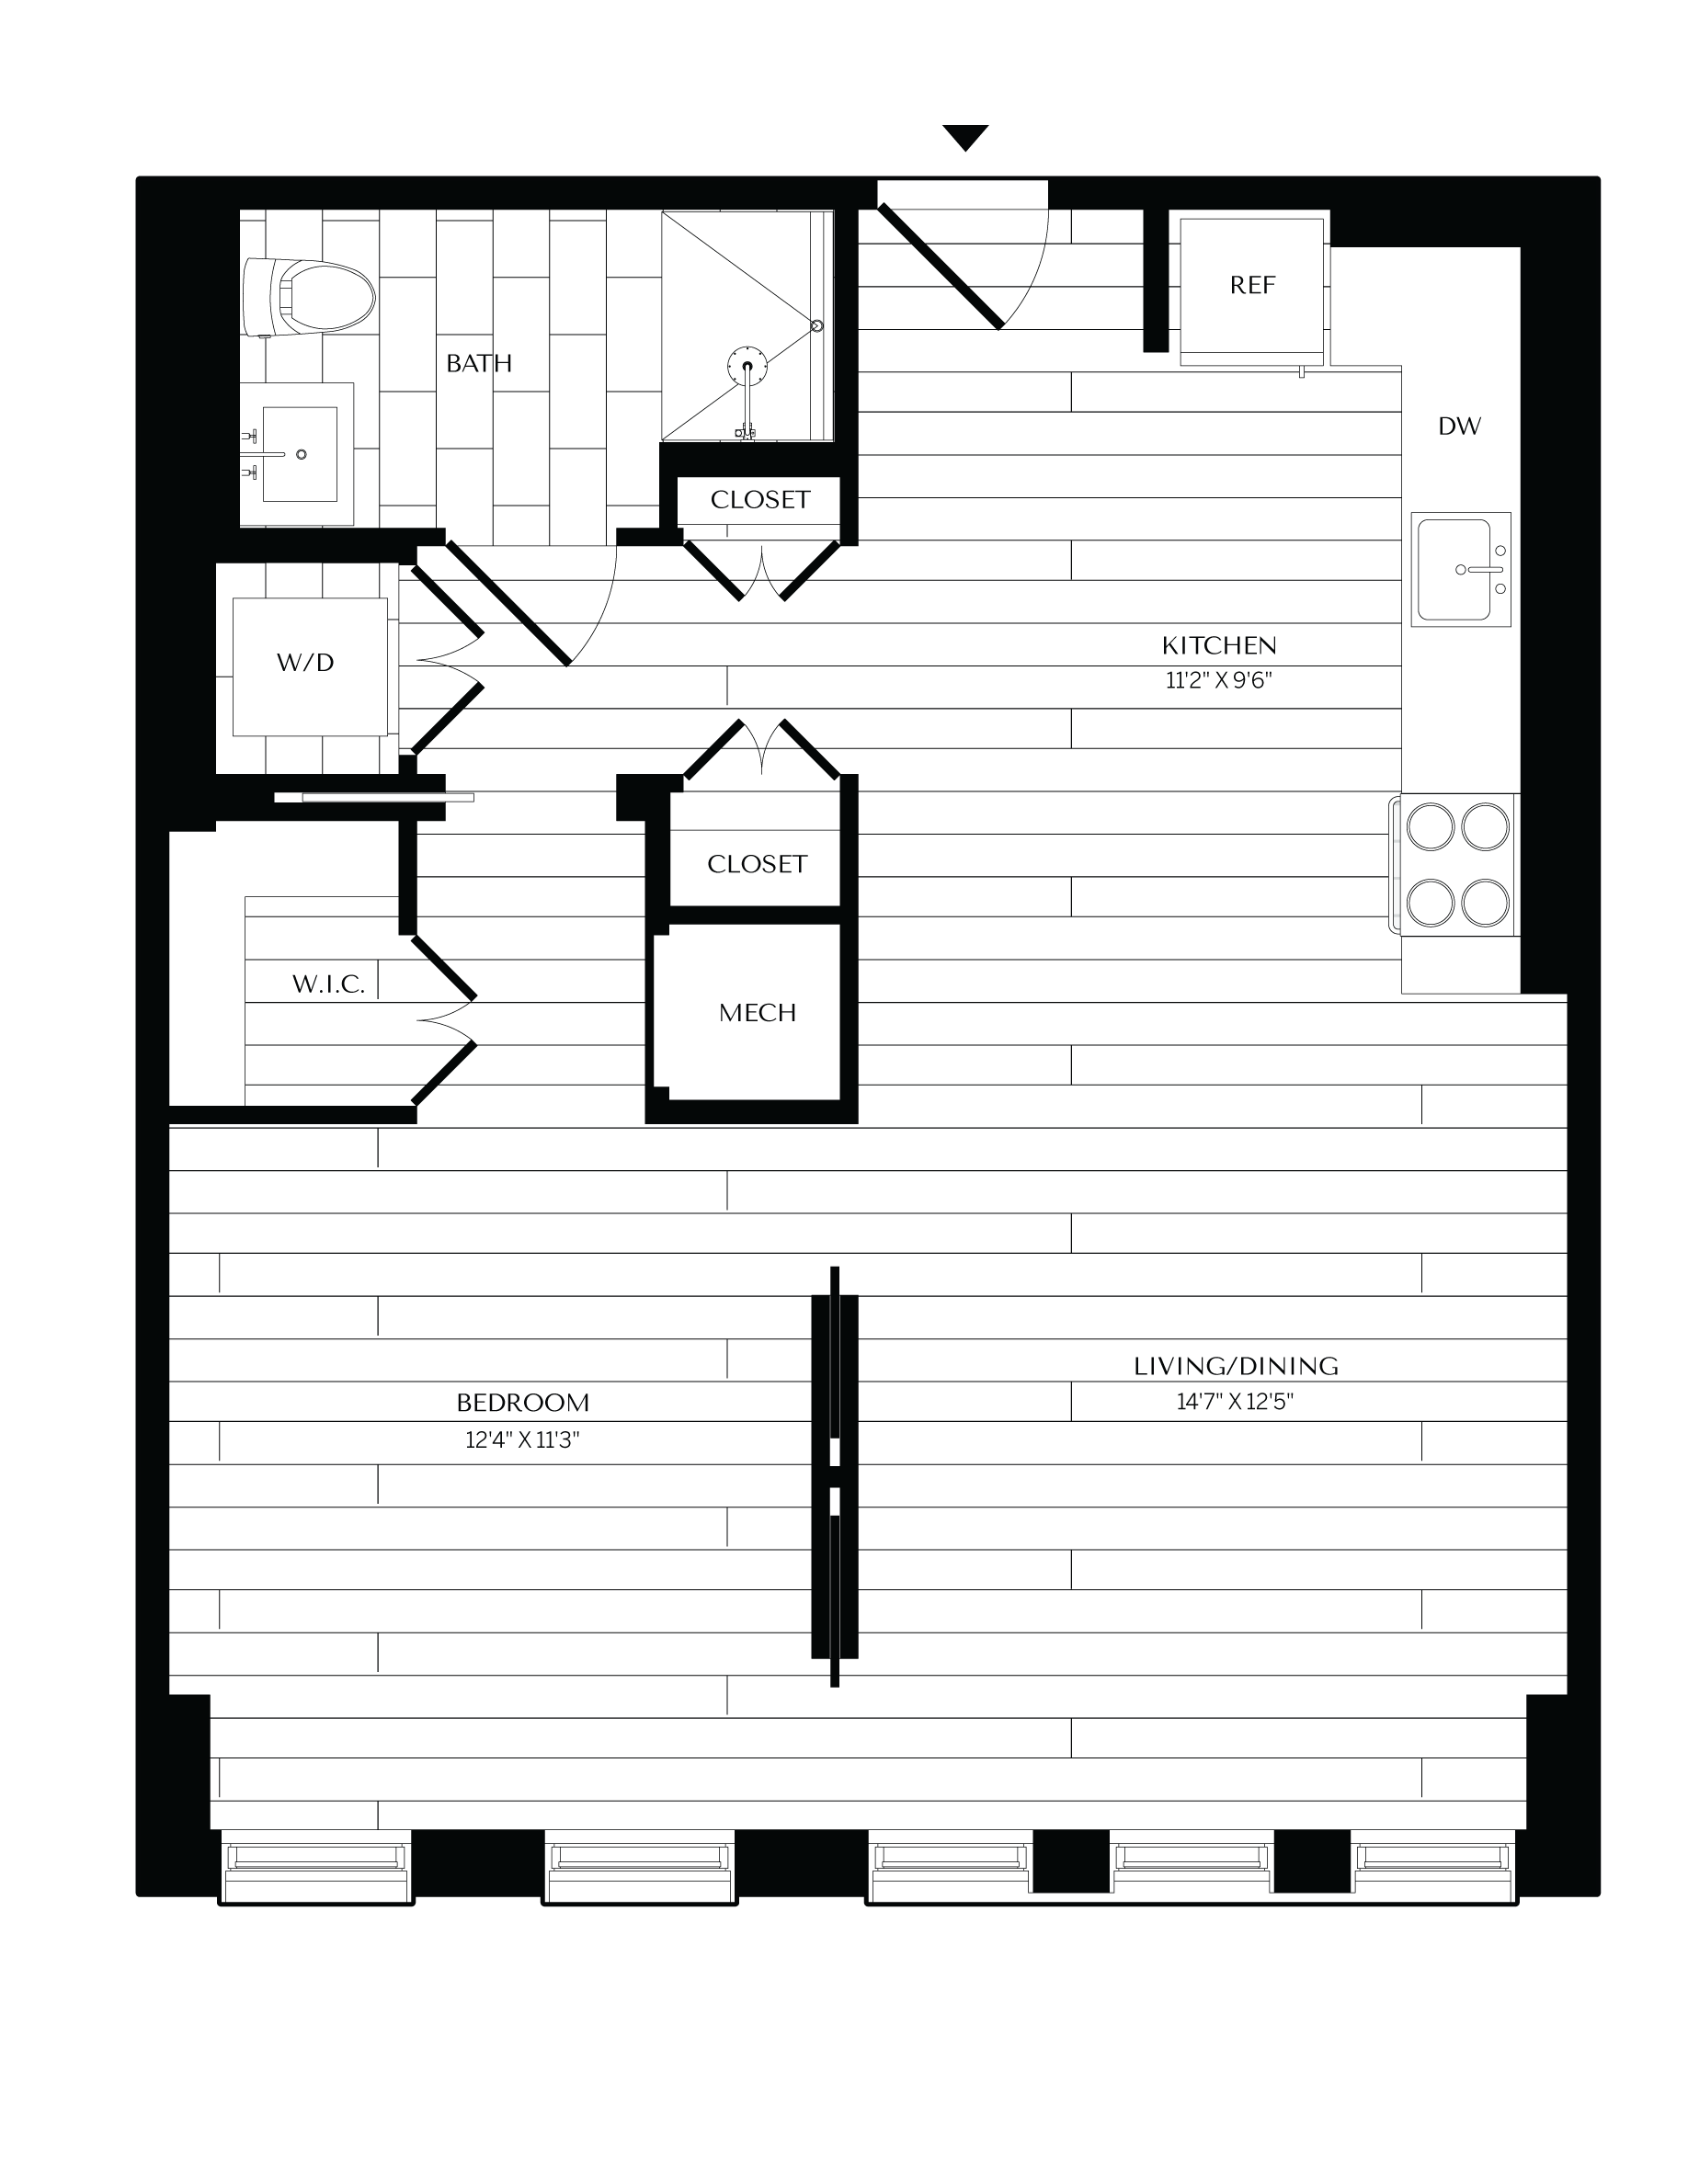 Floorplan image of unit 0814